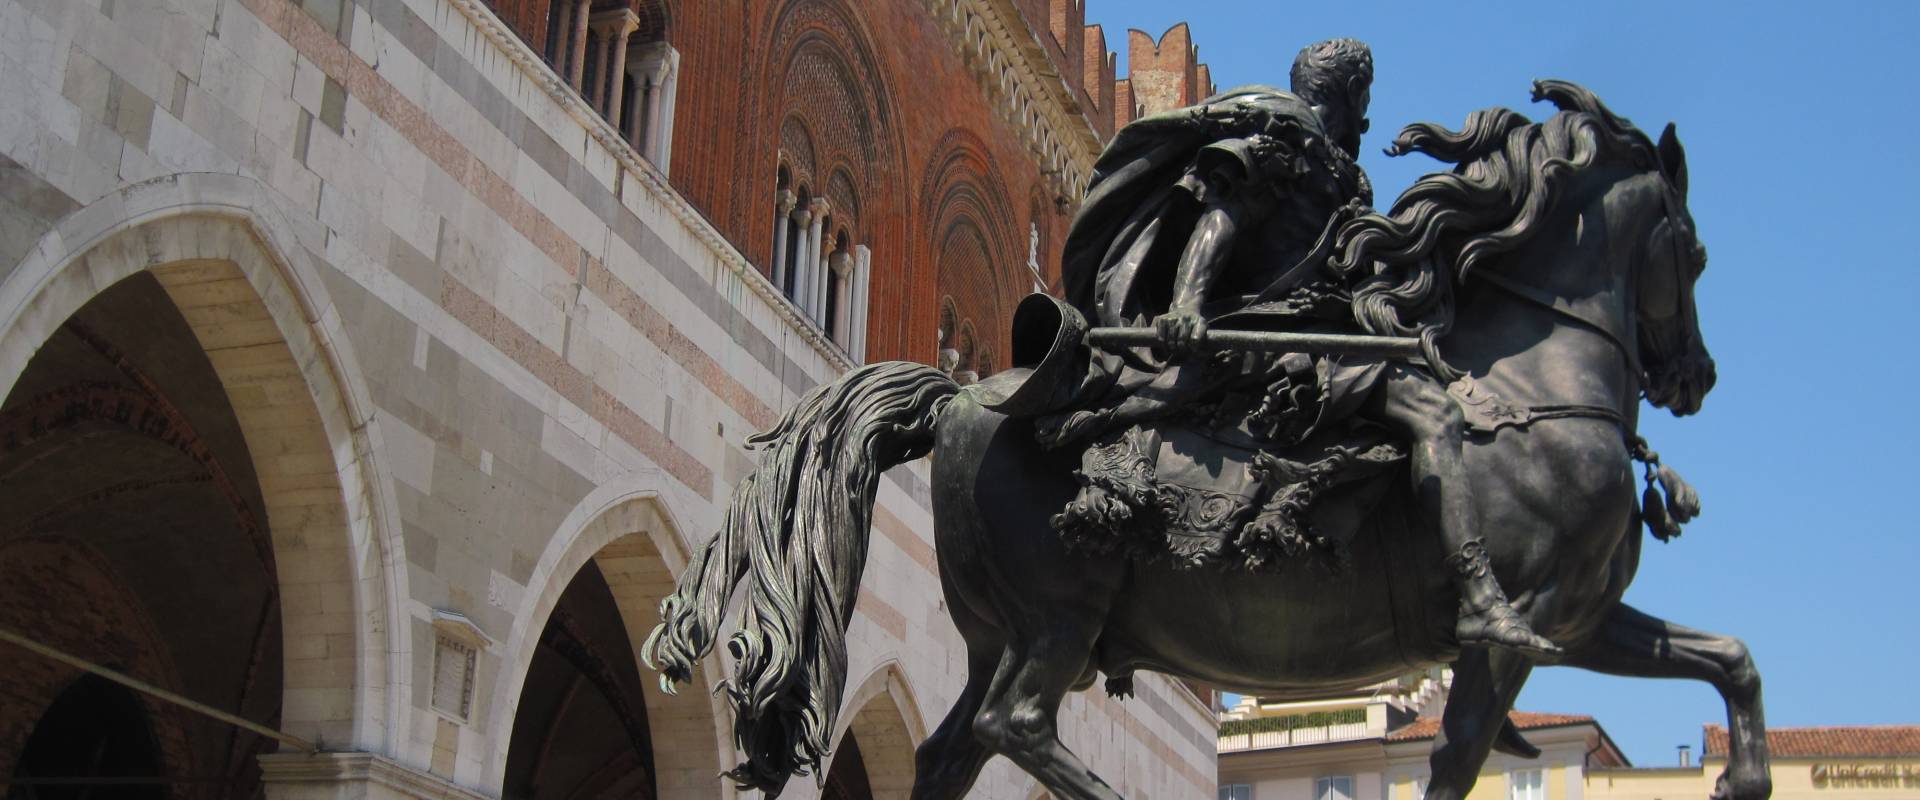 033032598 - Piacenza Statue Equestri Farnesiane foto di Mostacchi.angelo